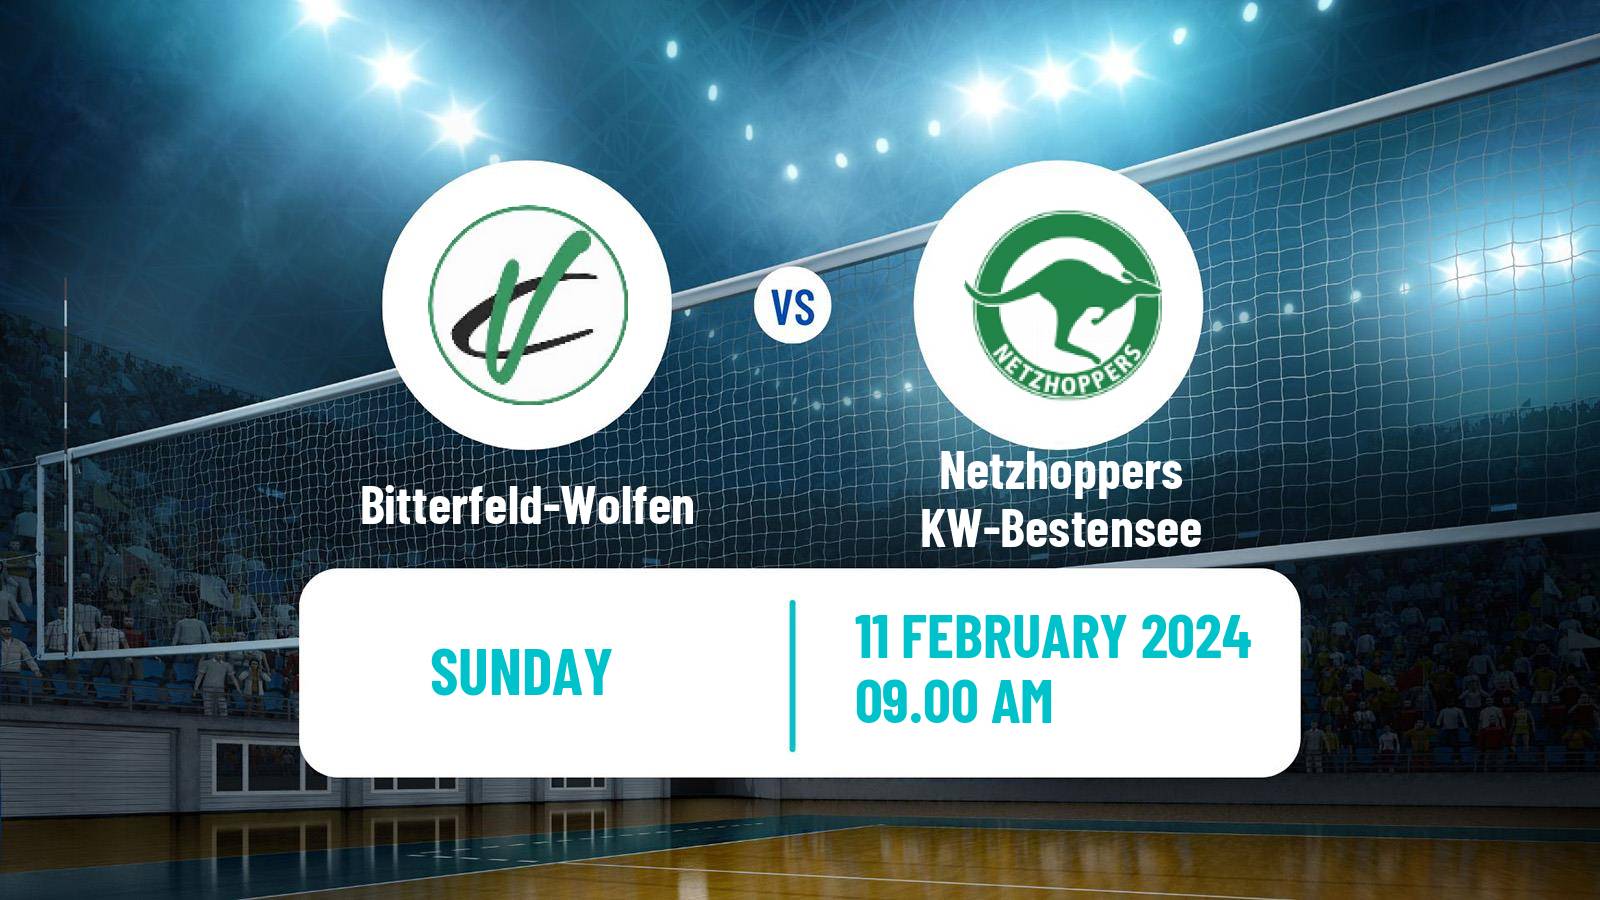 Volleyball German Bundesliga Volleyball Bitterfeld-Wolfen - Netzhoppers KW-Bestensee